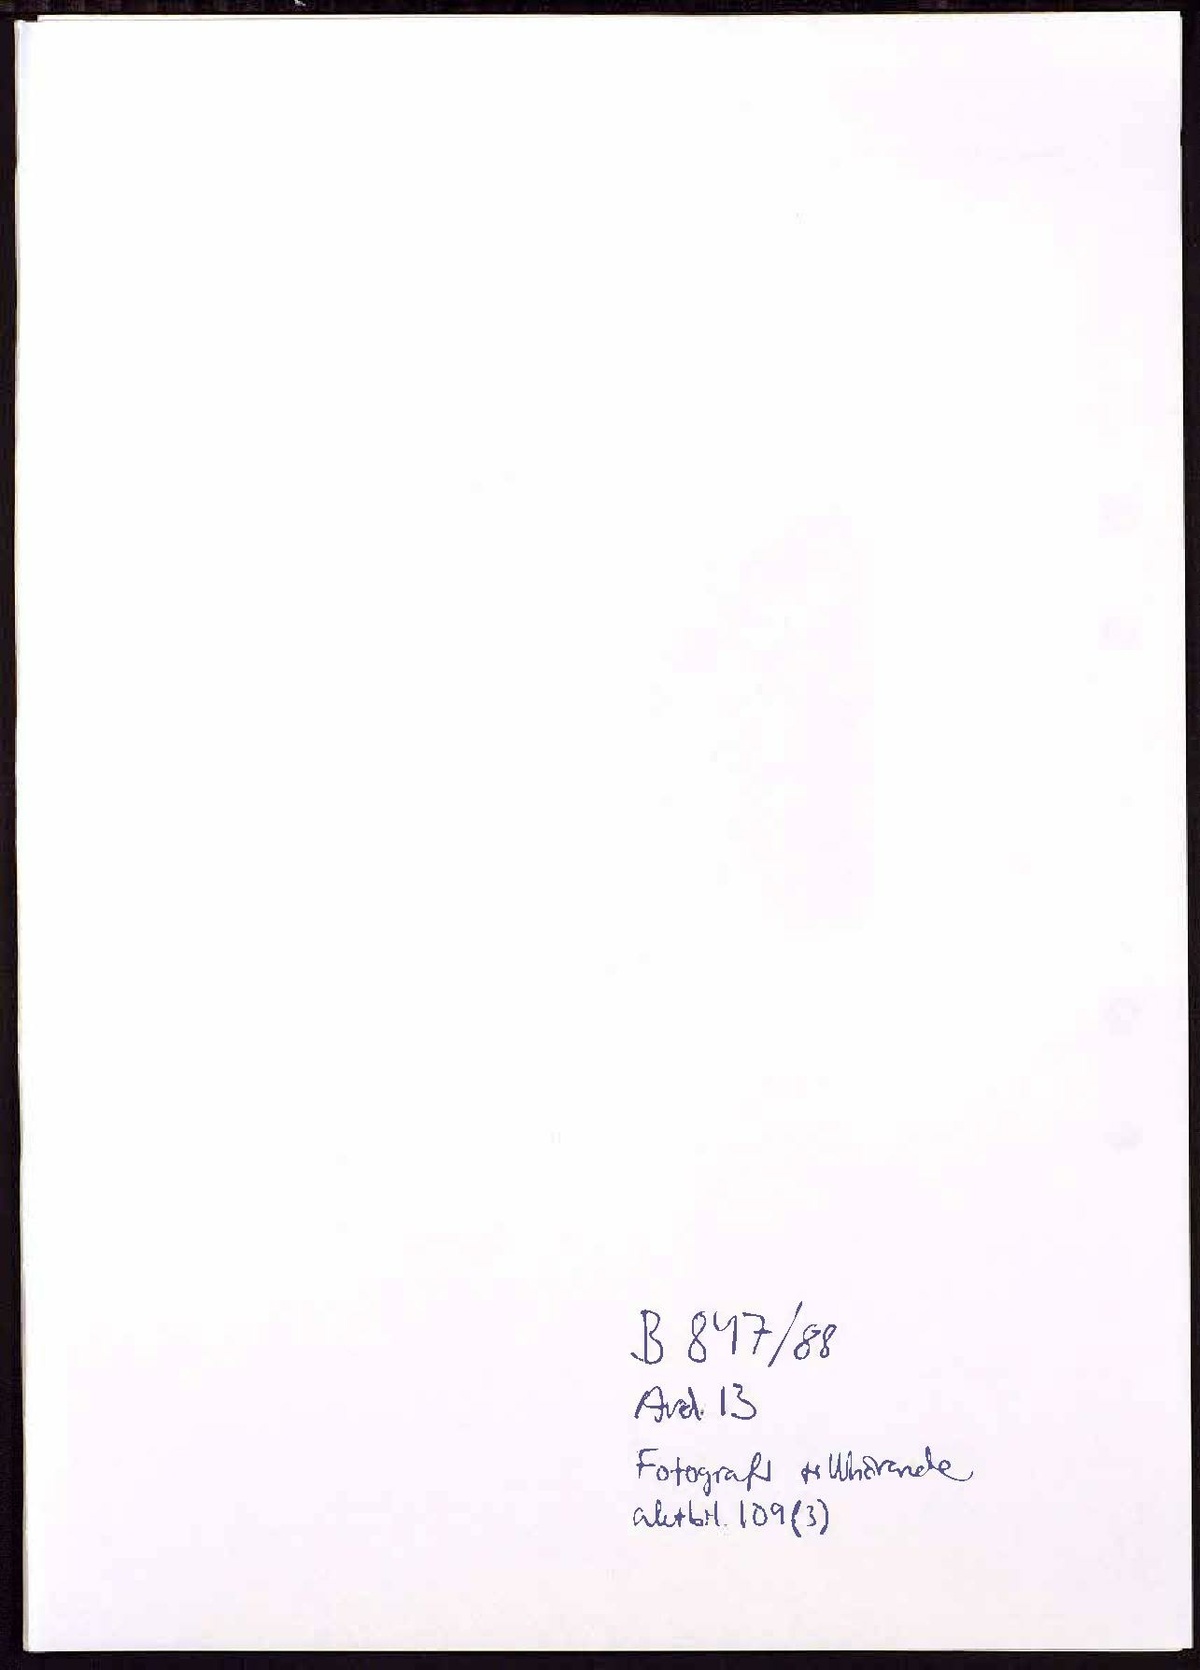 Pol-1989-03-16 IB10478-02-B Agneta Walfridsson.pdf